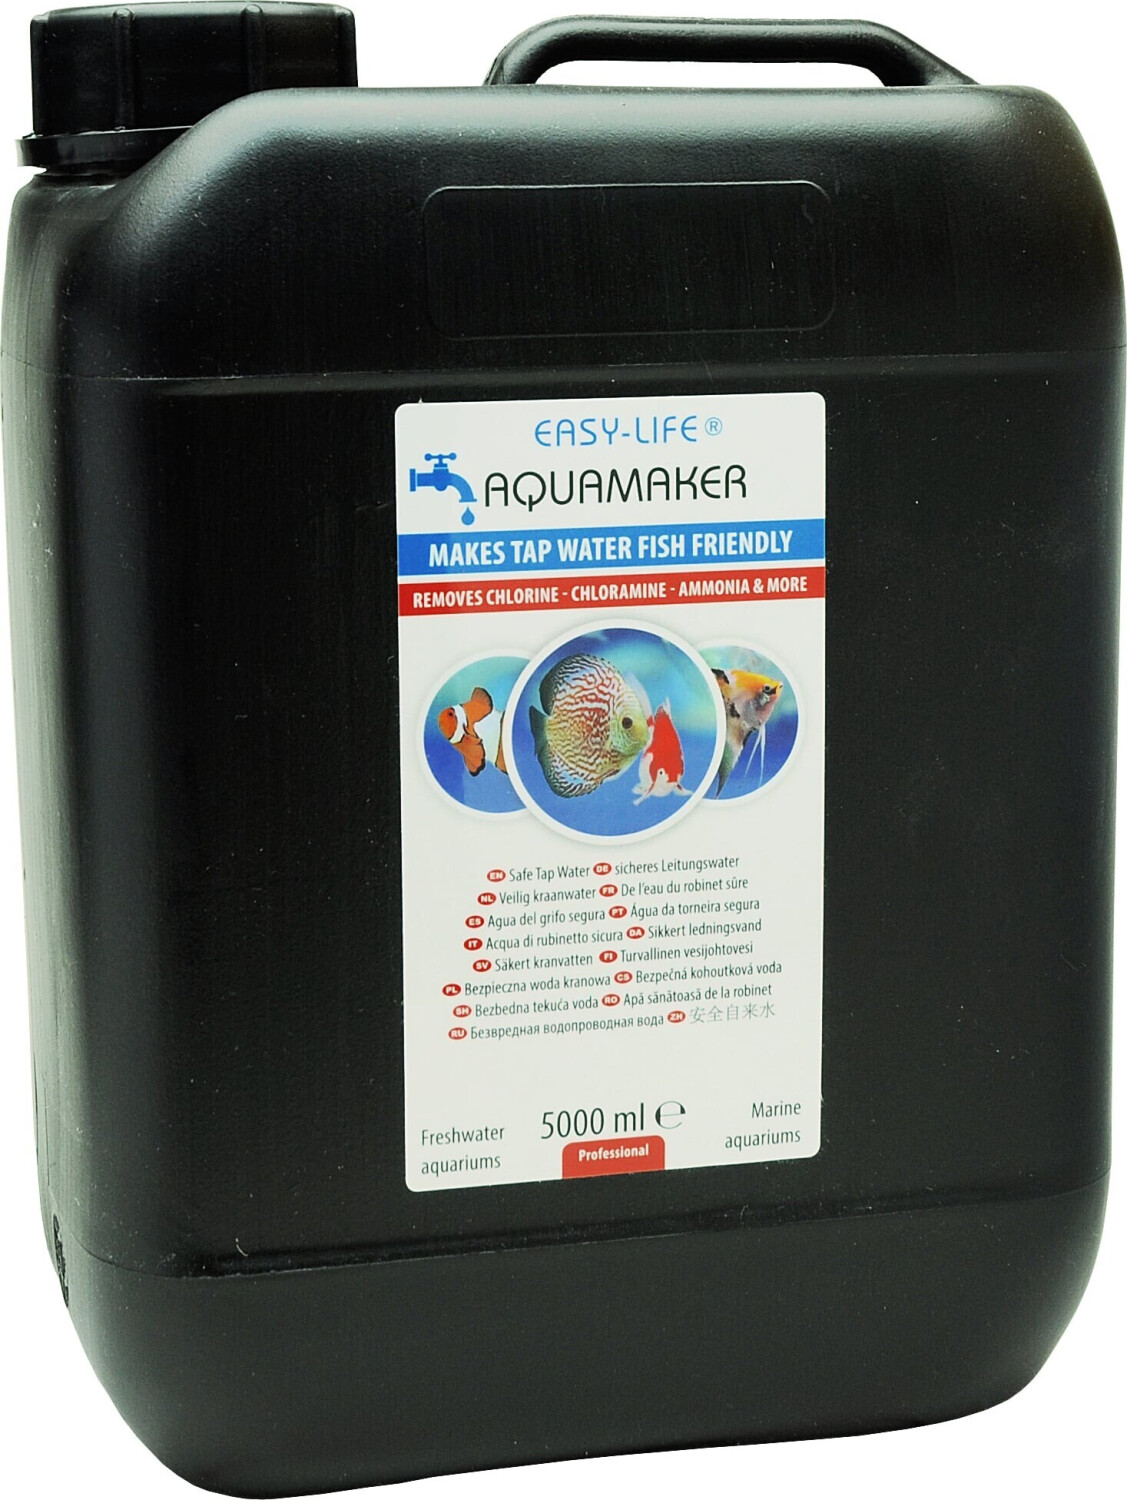 EASY LIFE Filter Medium 250 ml Conditionneur d'eau pour aquarium